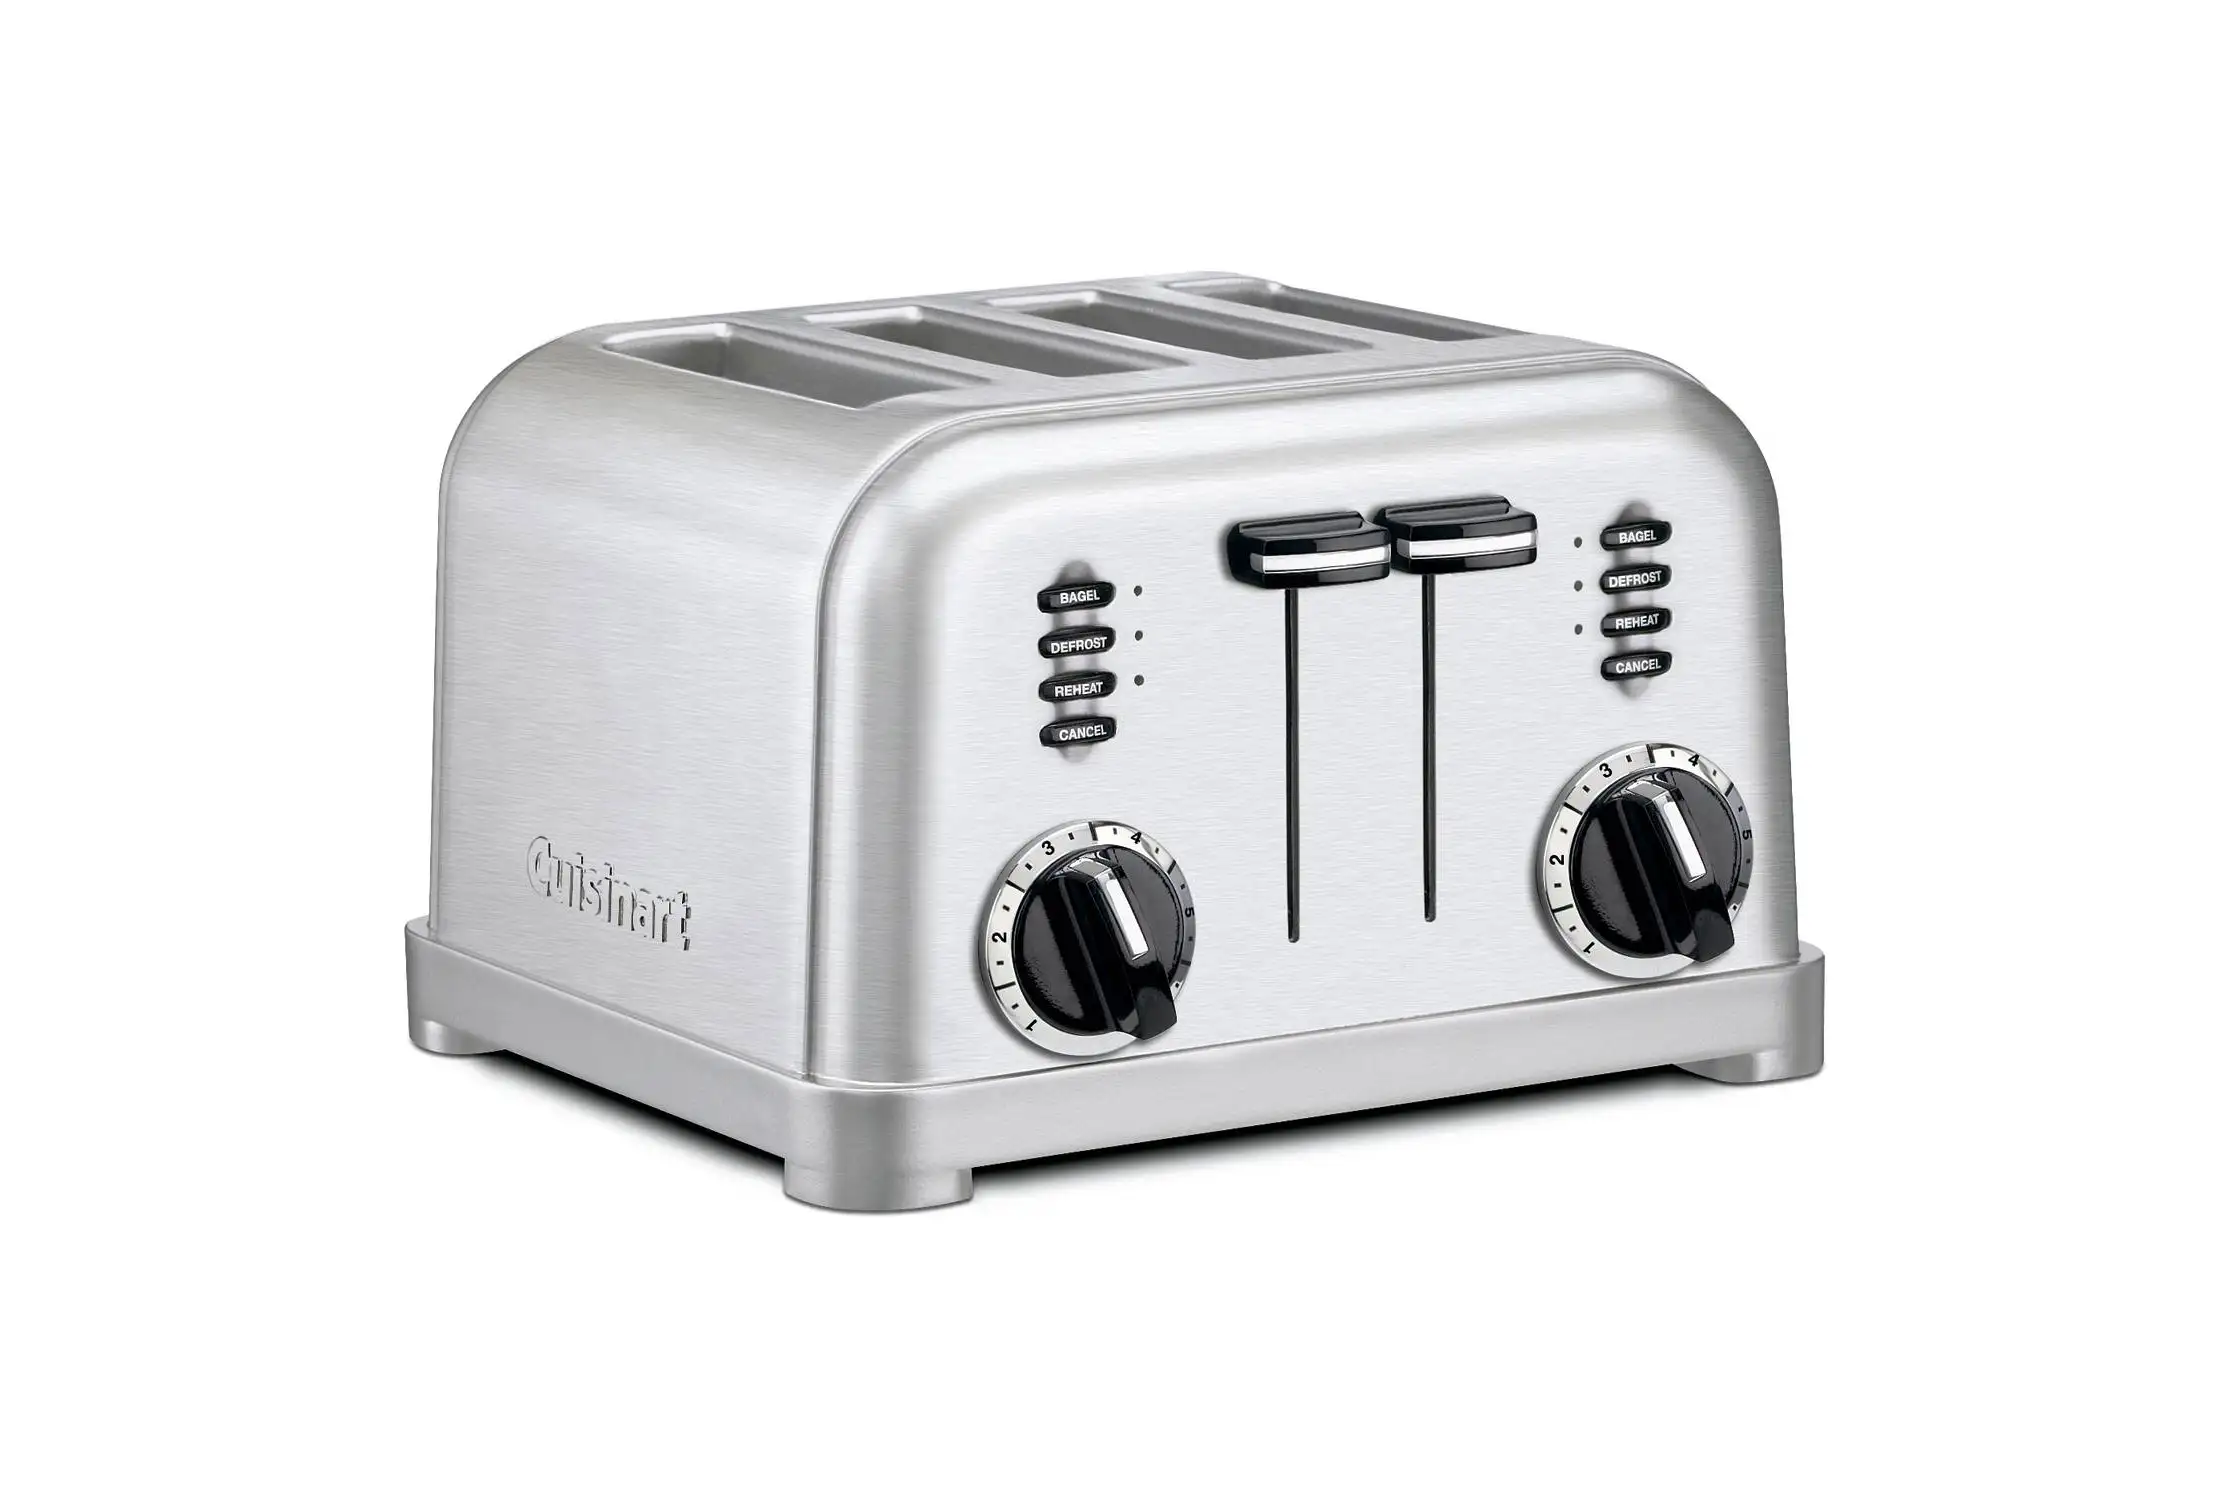 171110-target-black-friday-savings-toaster